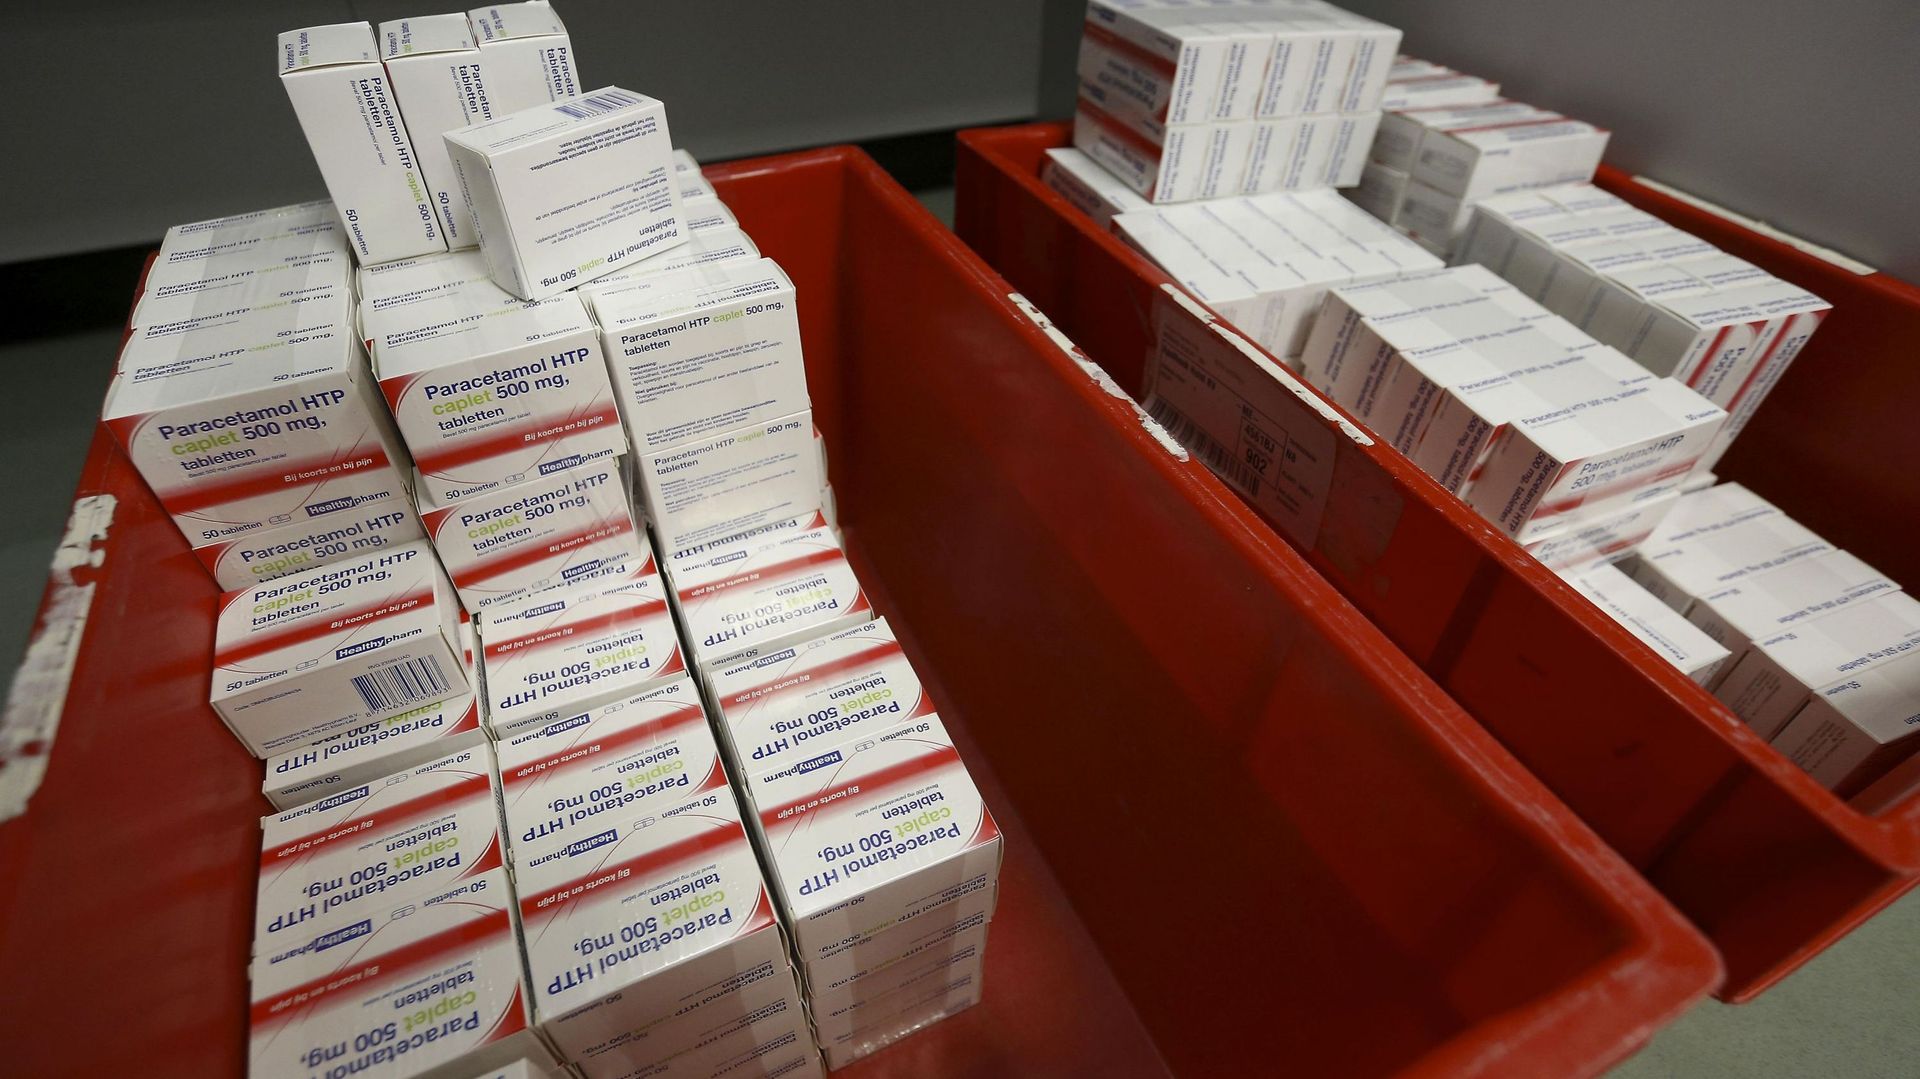 Des boîtes de paracetamol dans une pharmacie aux Pays-Bas